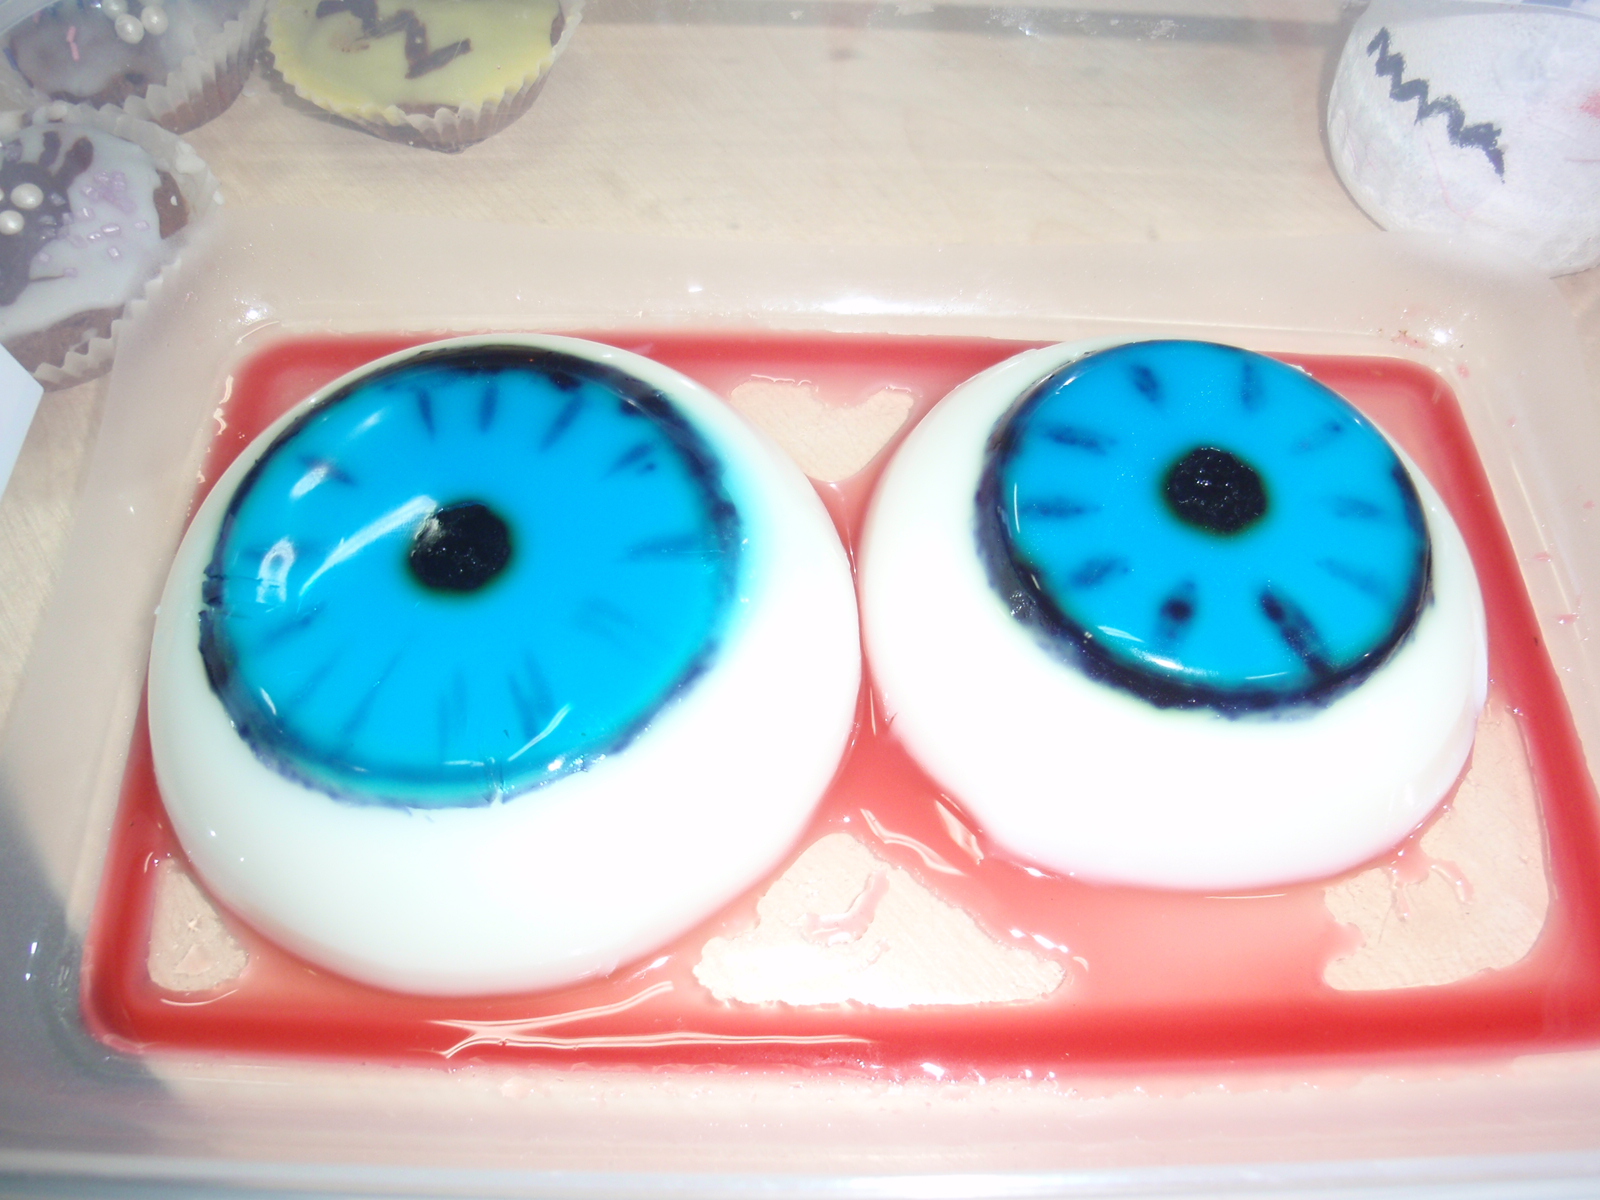 Na zdjęciu są 2 galaretki przedstawiające ludzkie oczy  w niebieskim kolorze. Wyglądaja jak żywe oczy.